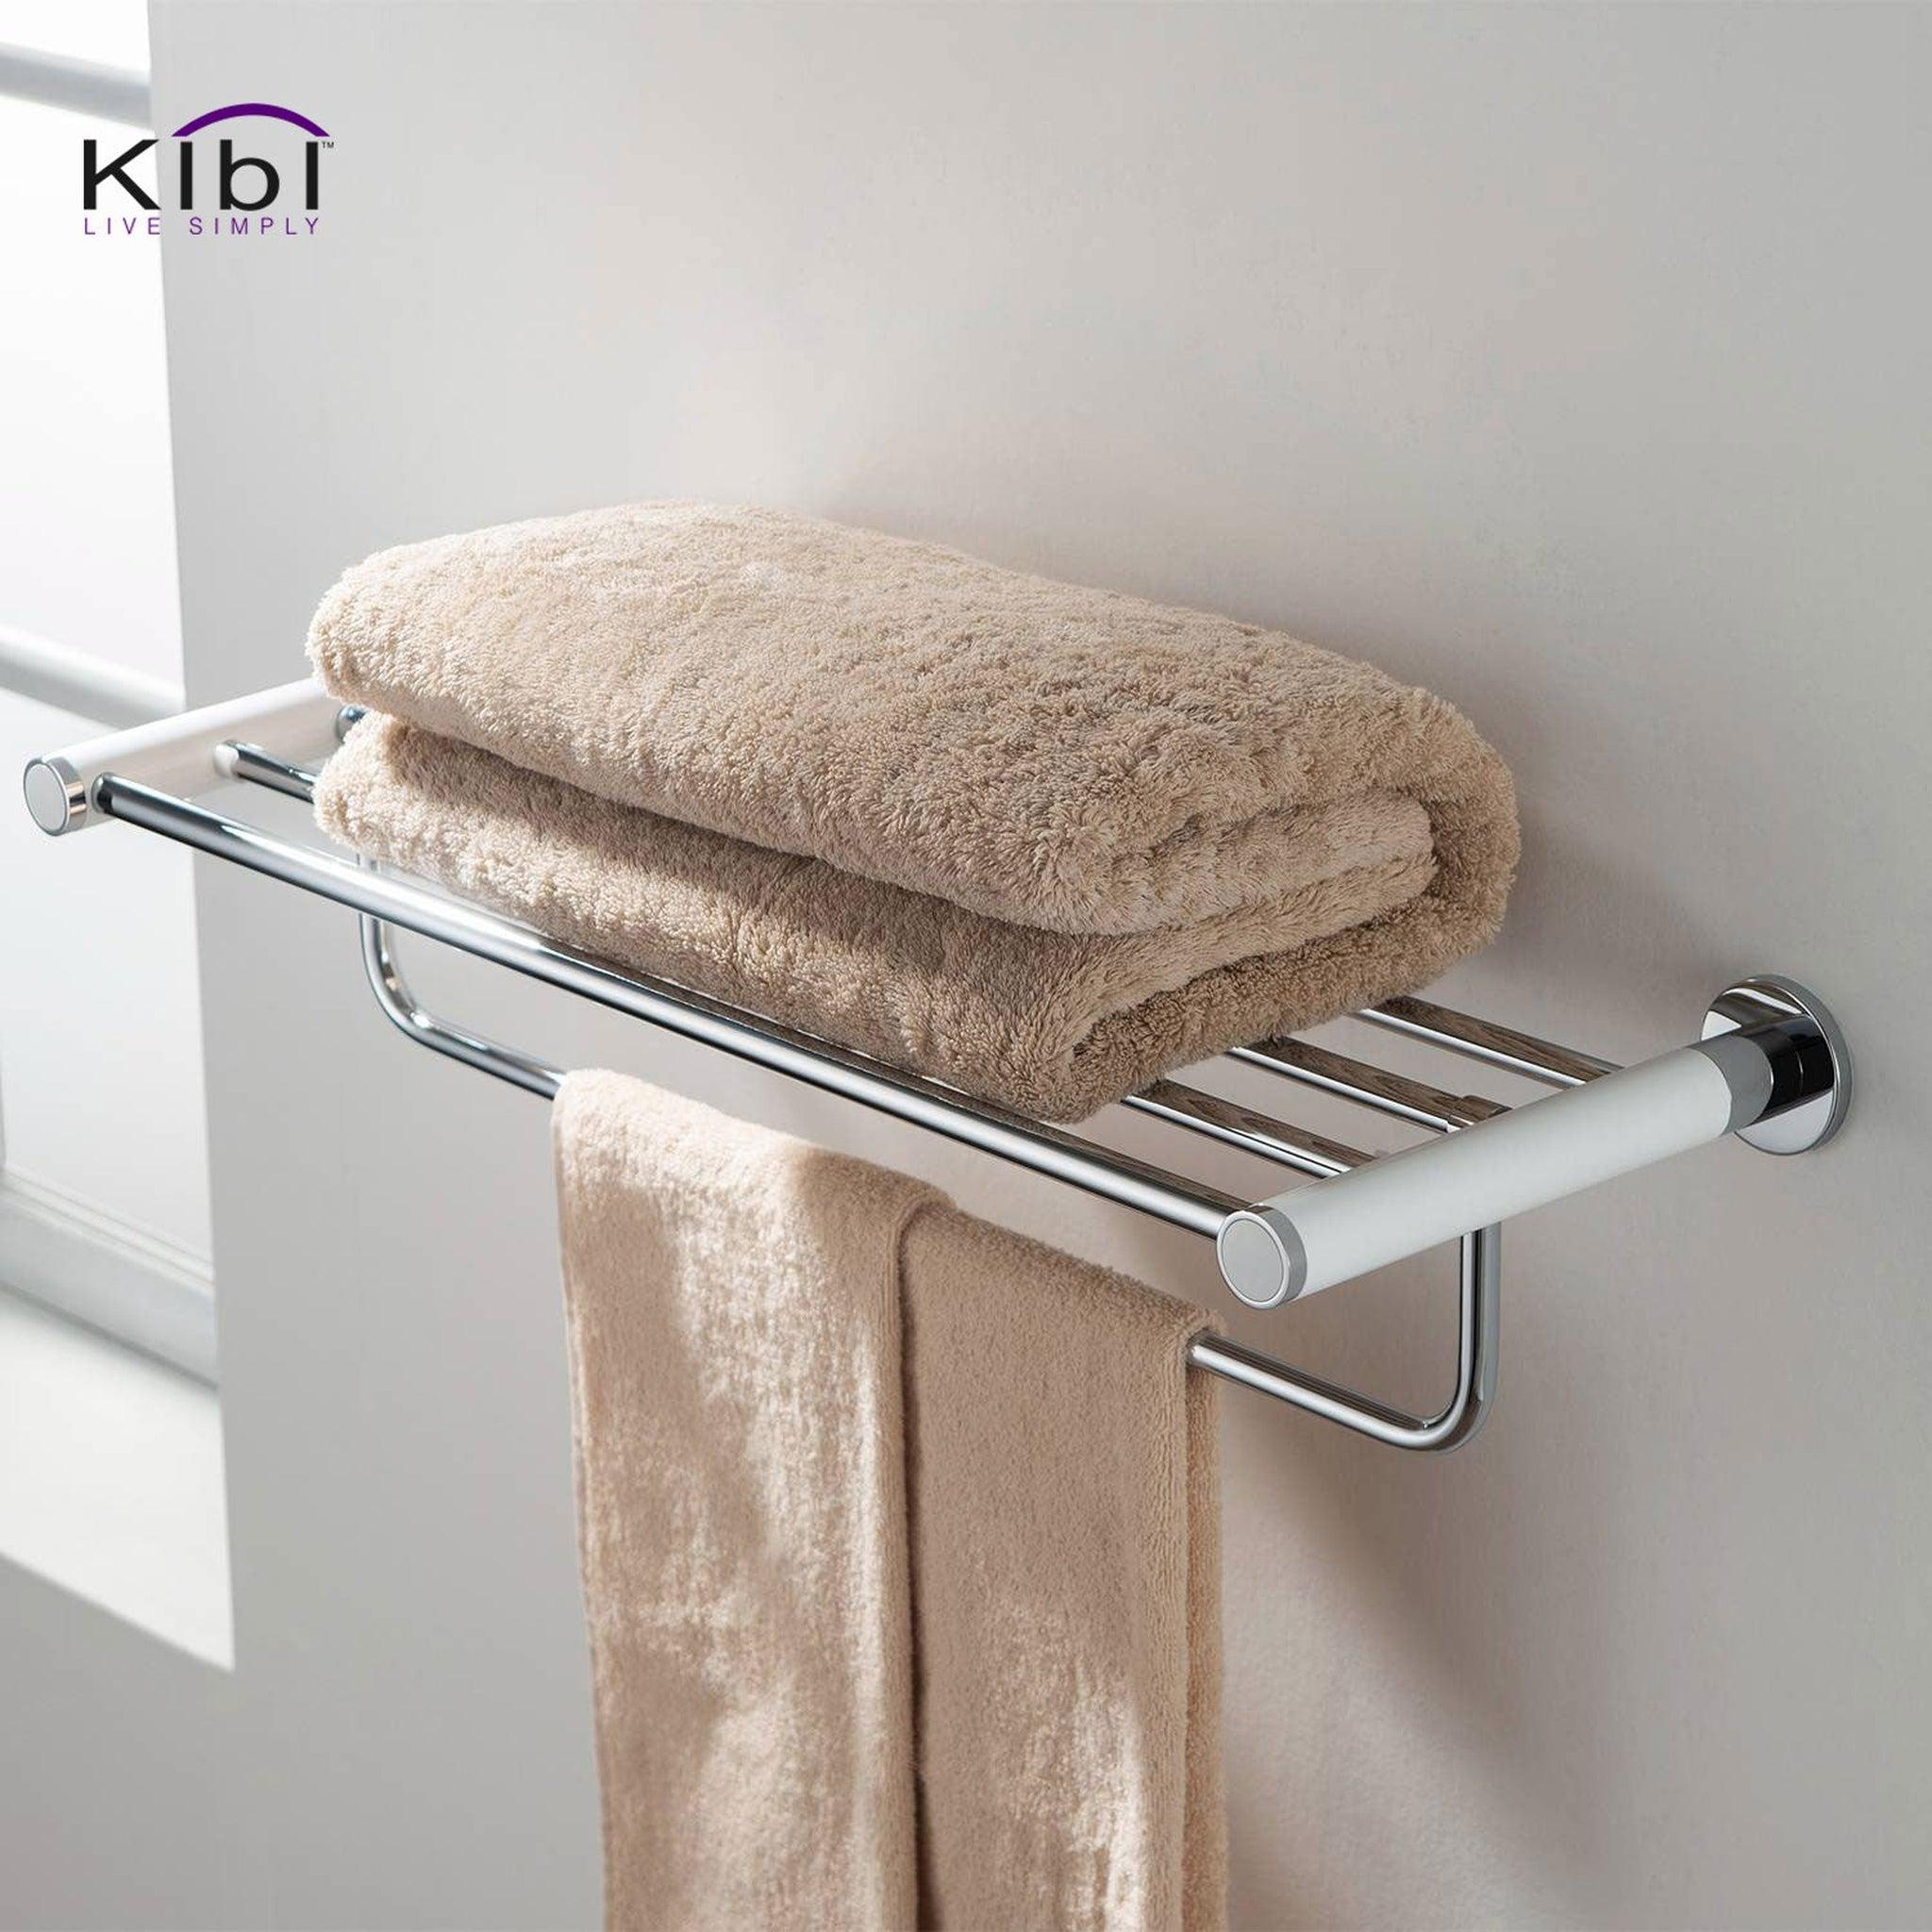 KIBI, KIBI Abaco Towel Rack in Chrome White Finish